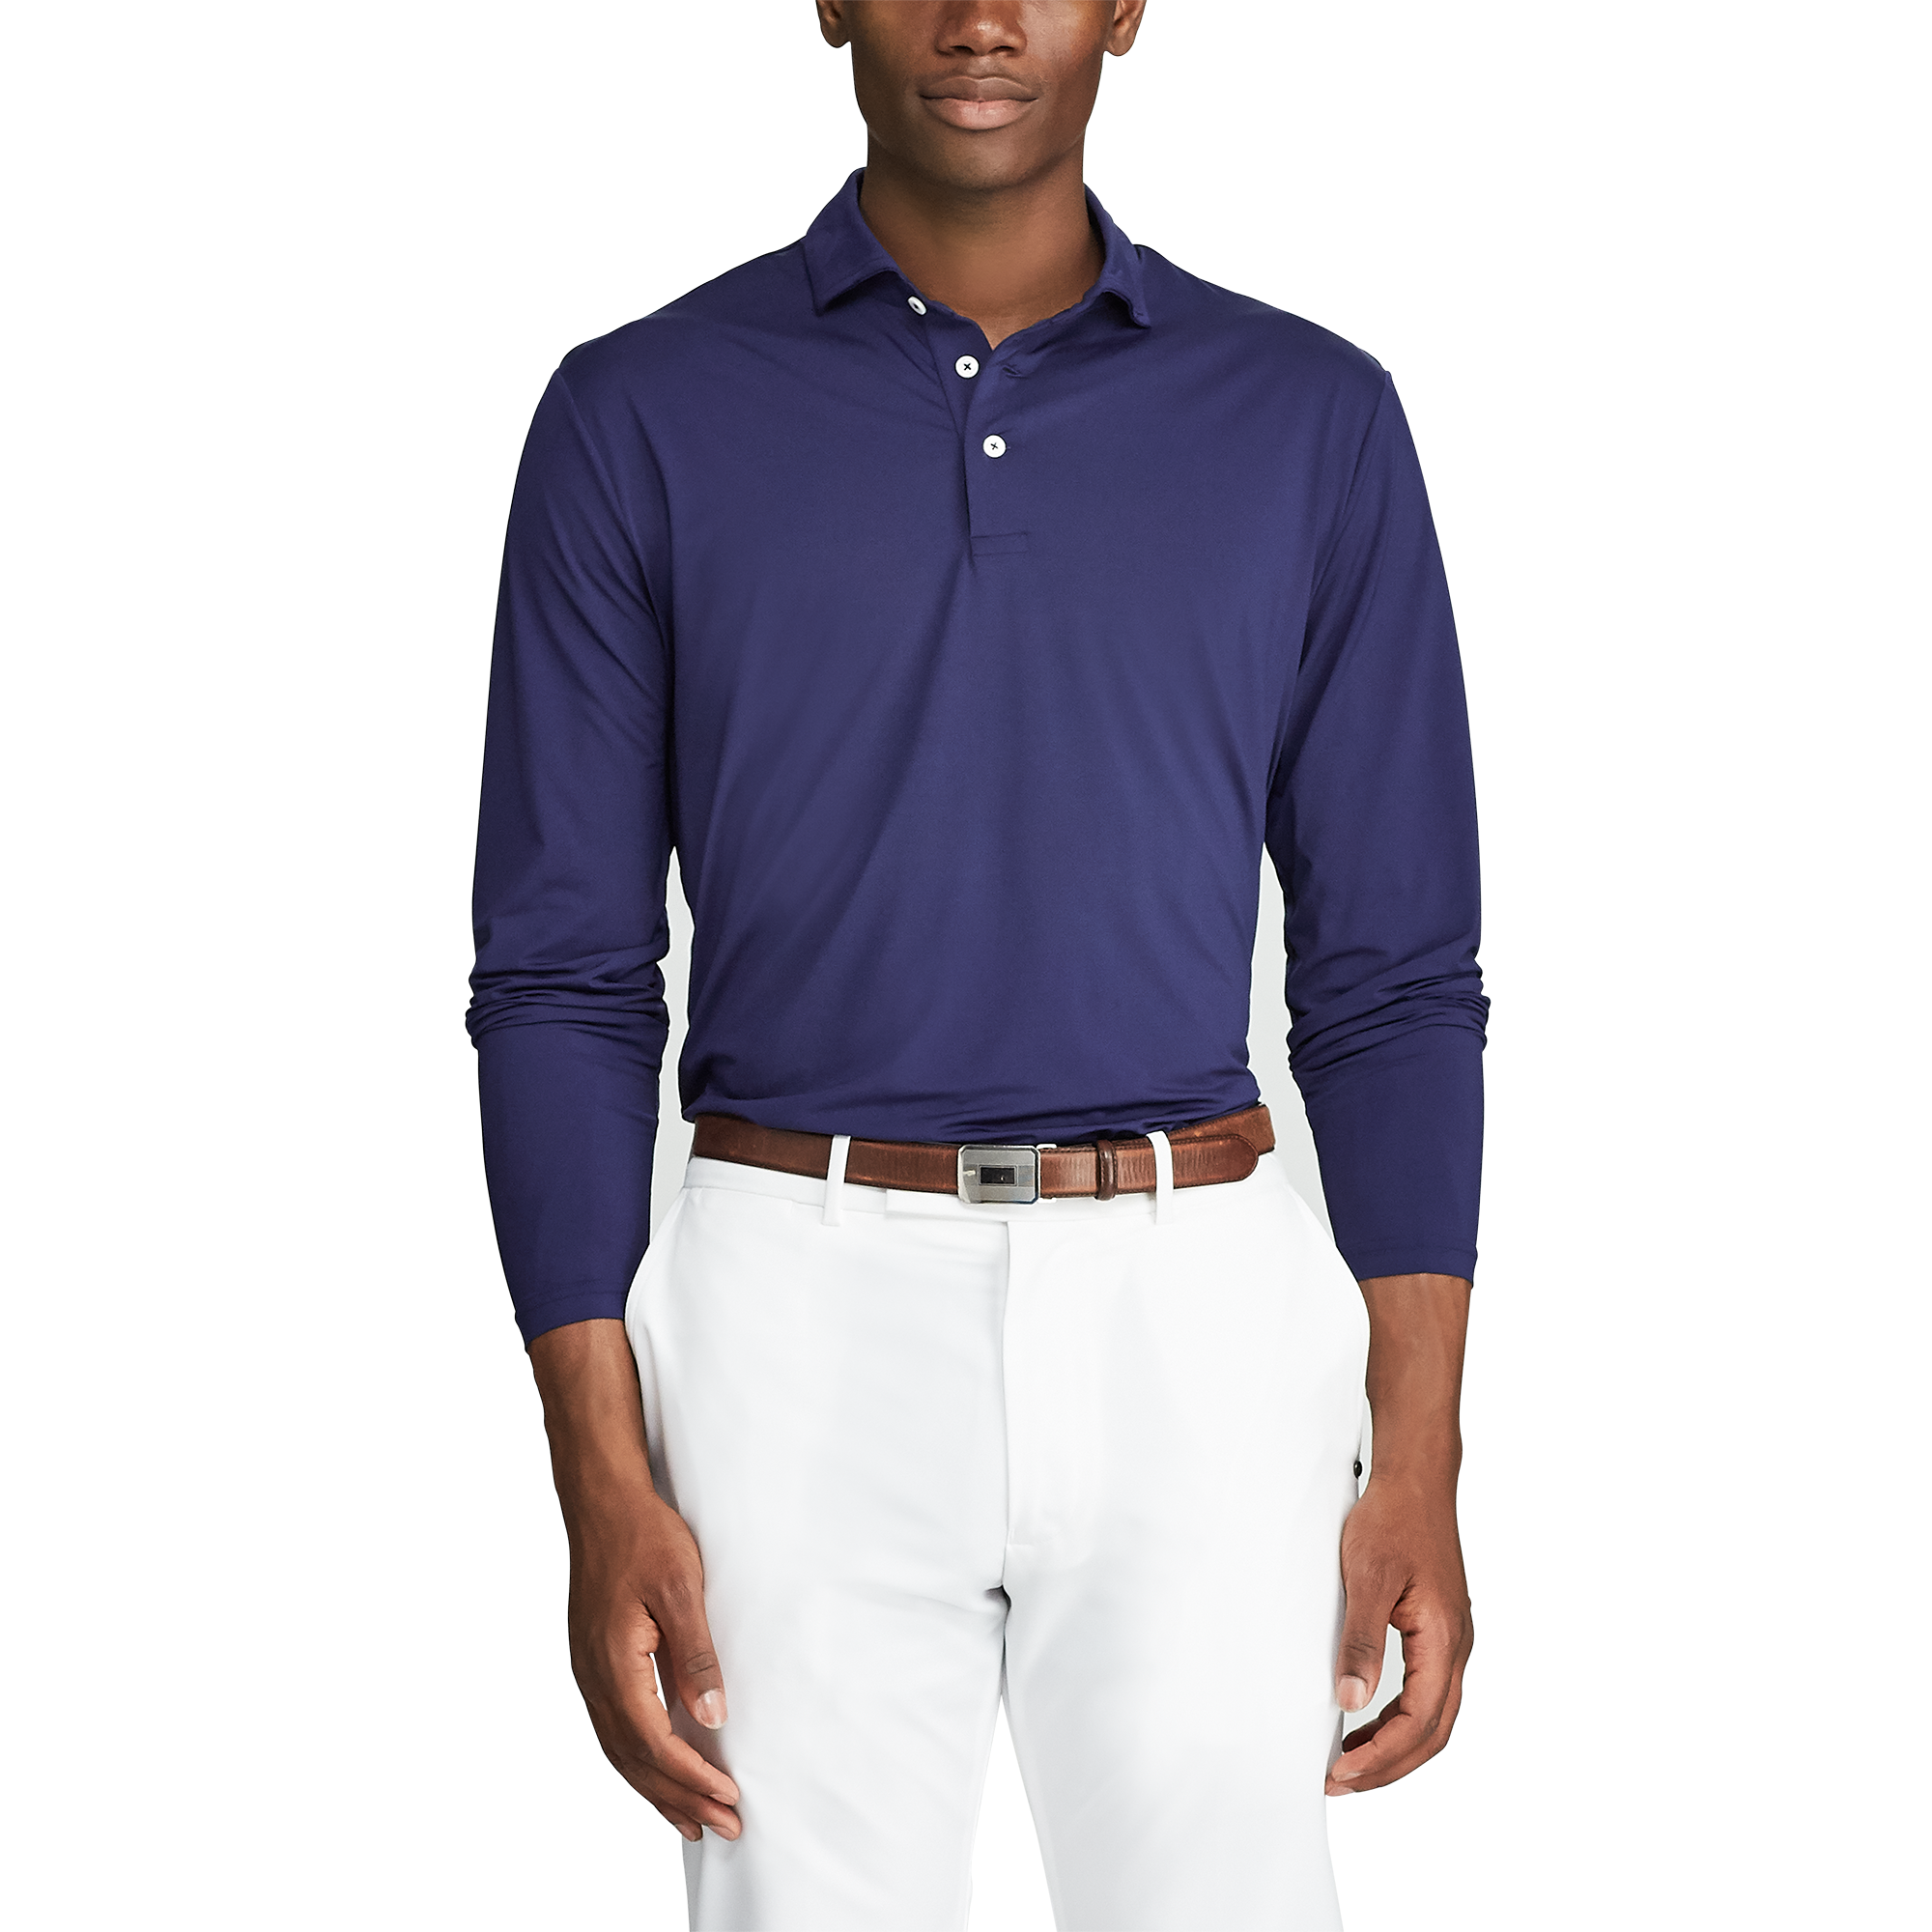 Polo Shirts Men Long Sleeves, Men's Long Sleeve Polo Shirt